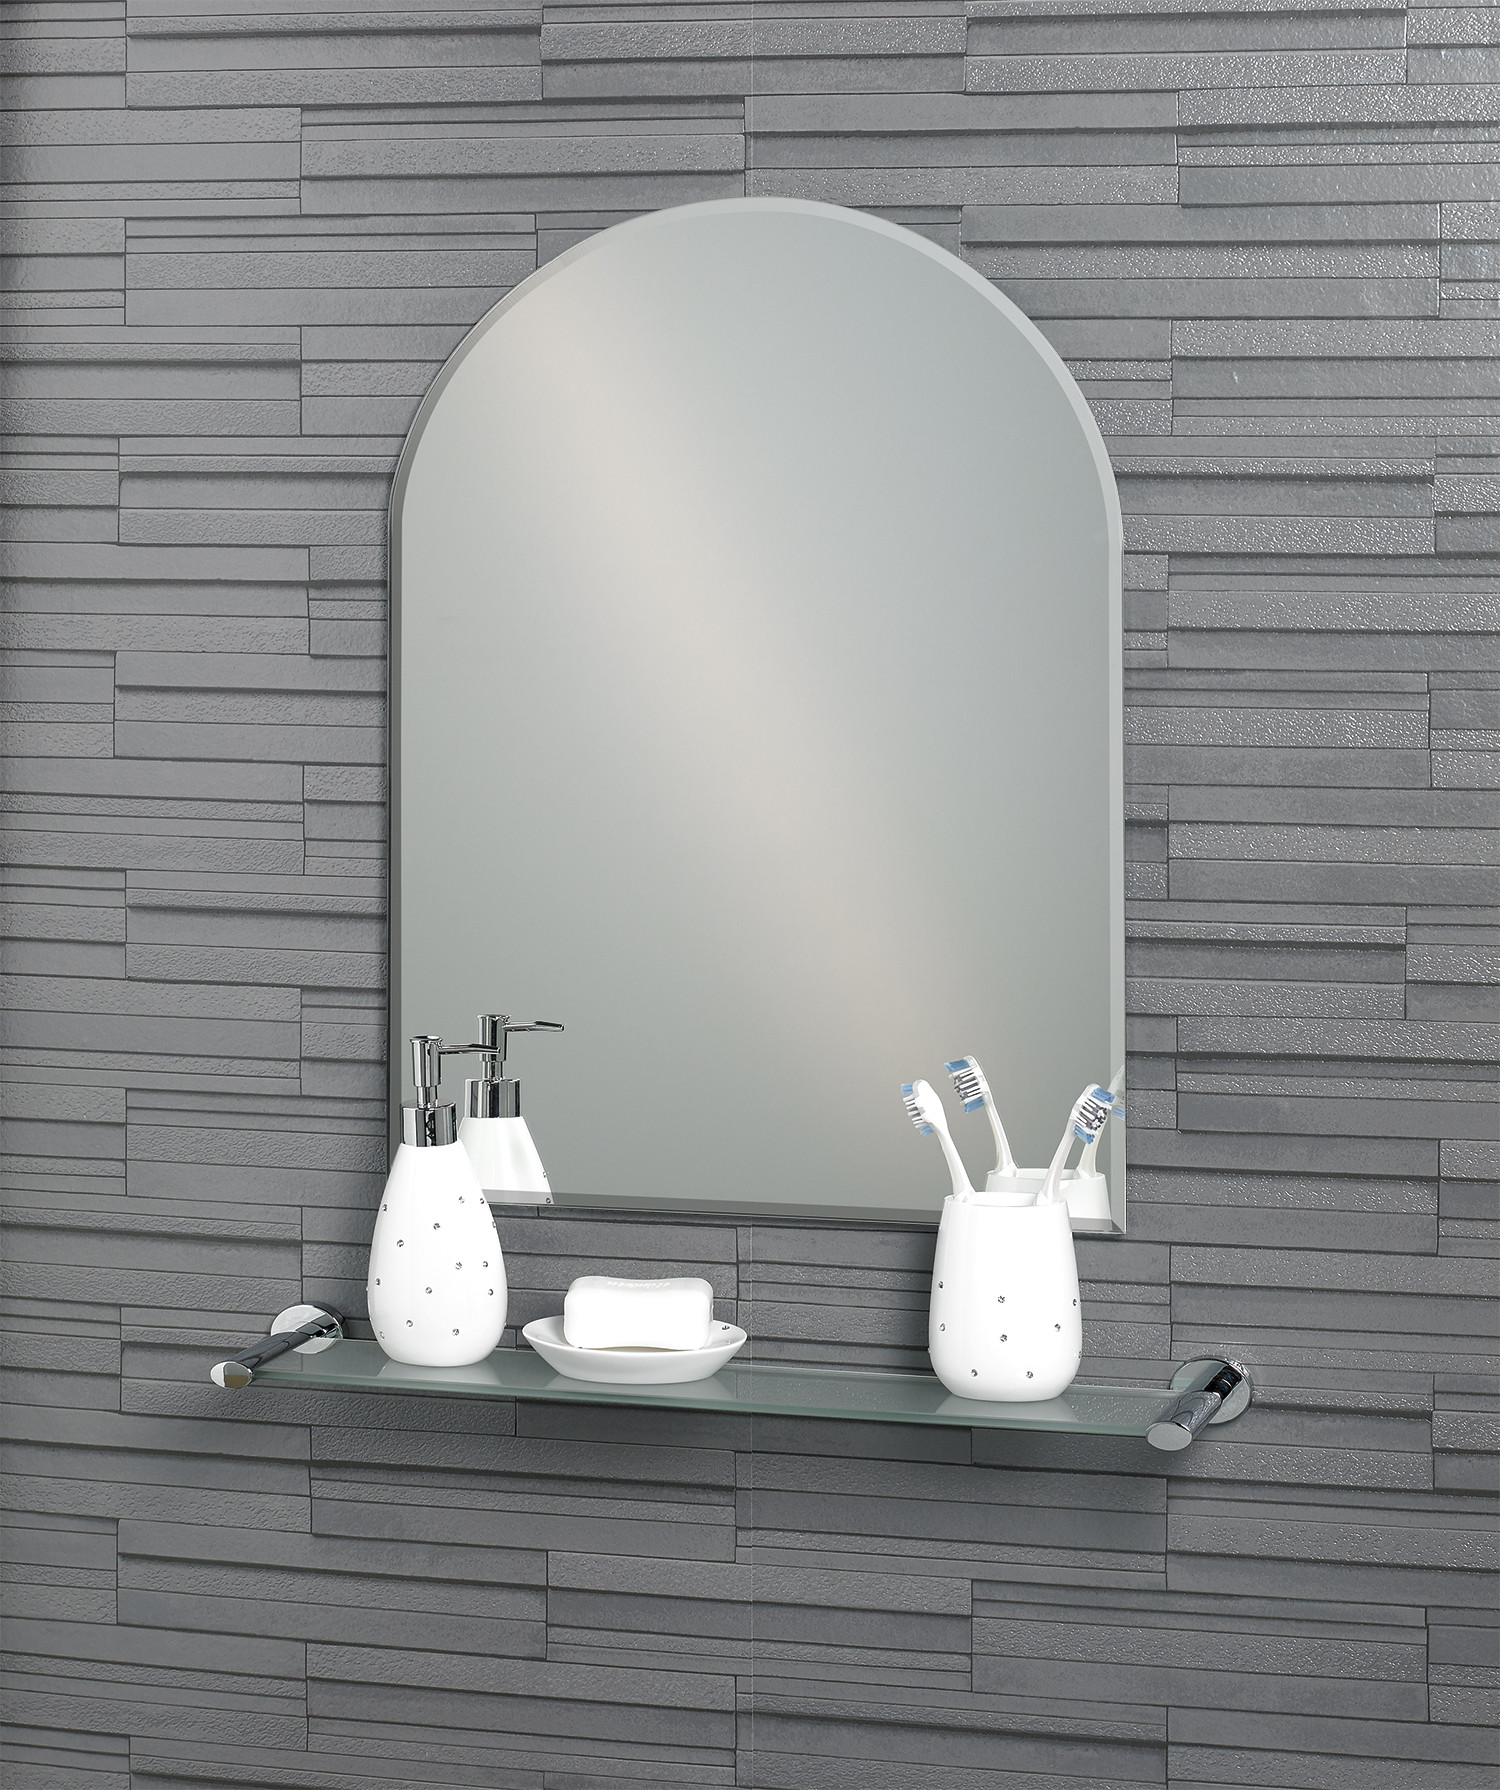 Arched Bathroom Mirror
 Buy Frameless Wall Mounted Arch "Hampton" Bathroom Mirror